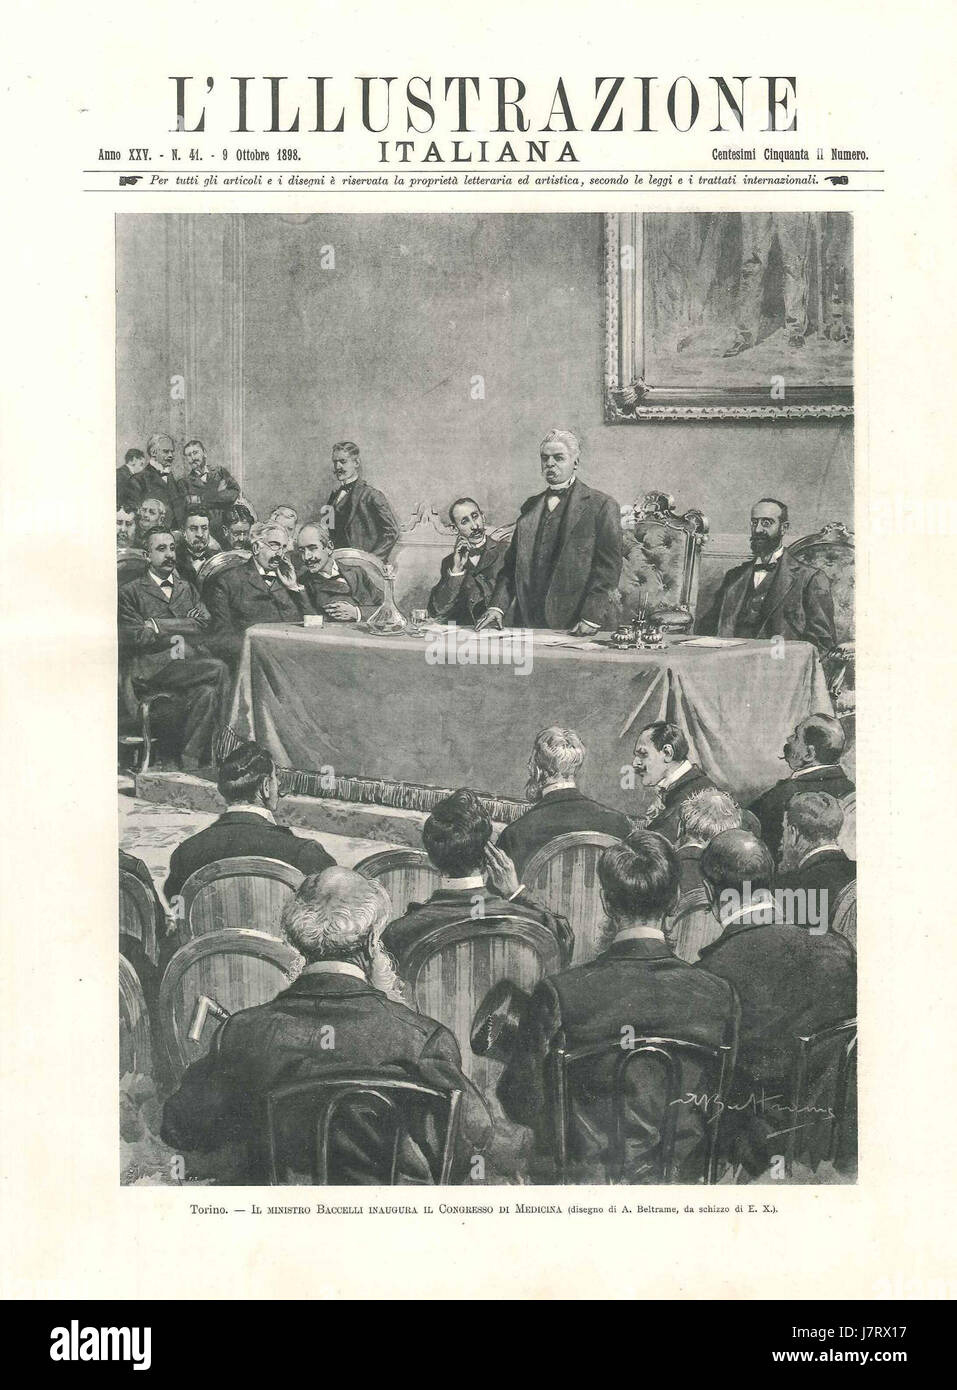 Baccelli Inaugura il Congresso di Medicina di Torino, L'Illustrazione Italiana, 1898 Stockfoto